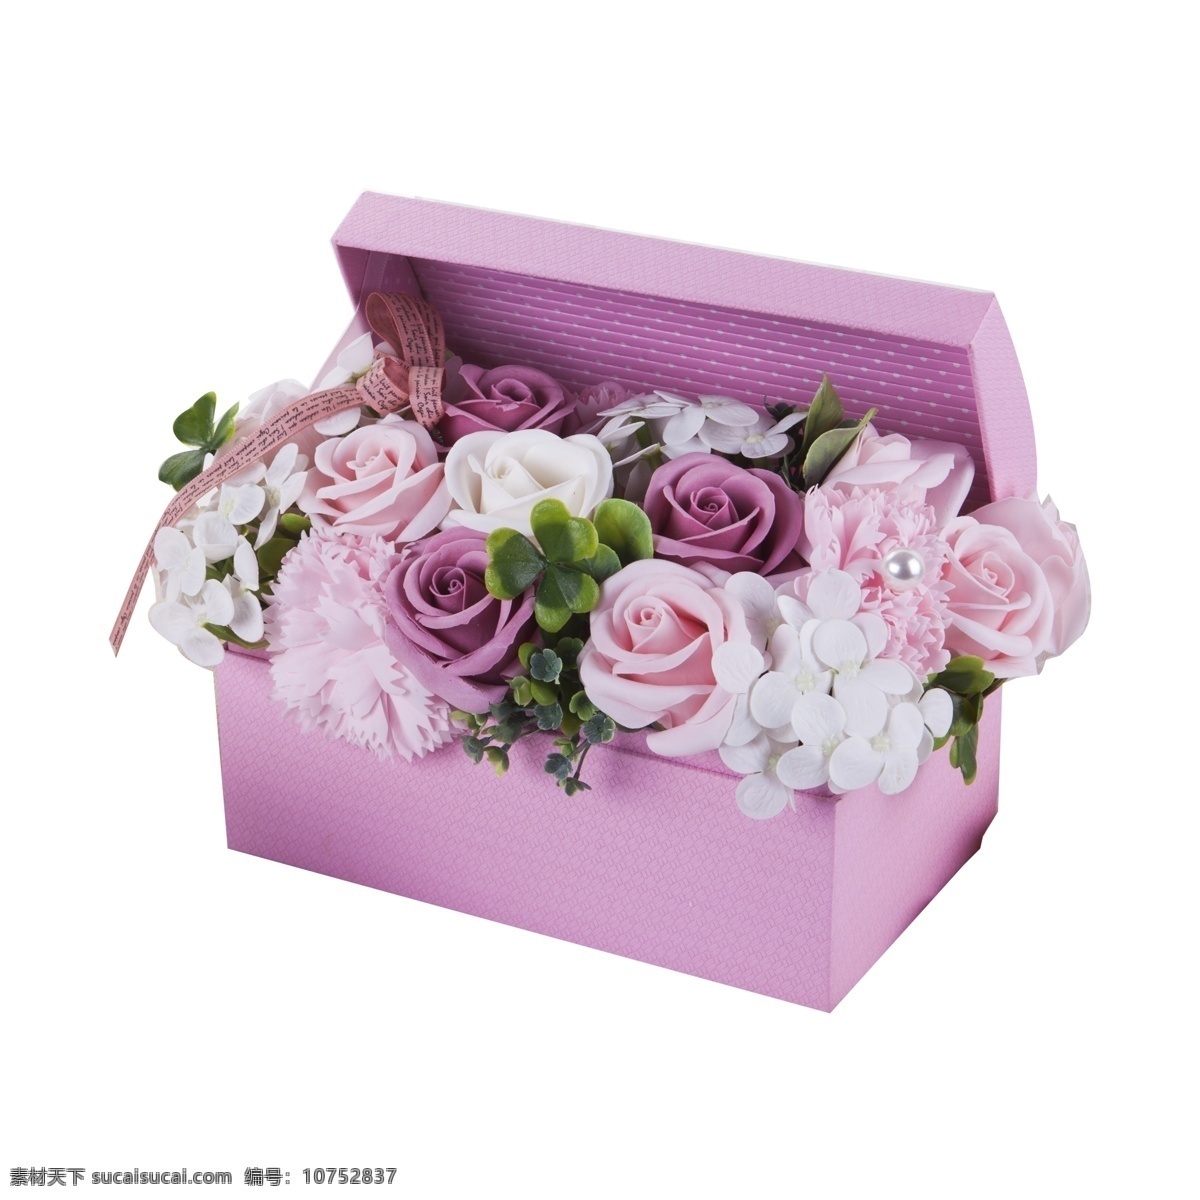 紫色 礼盒 装 情人节 花朵 免 扣 图 紫色玫瑰花 各种 粉色 梦幻紫色盒子 礼盒玫瑰 情人节表白